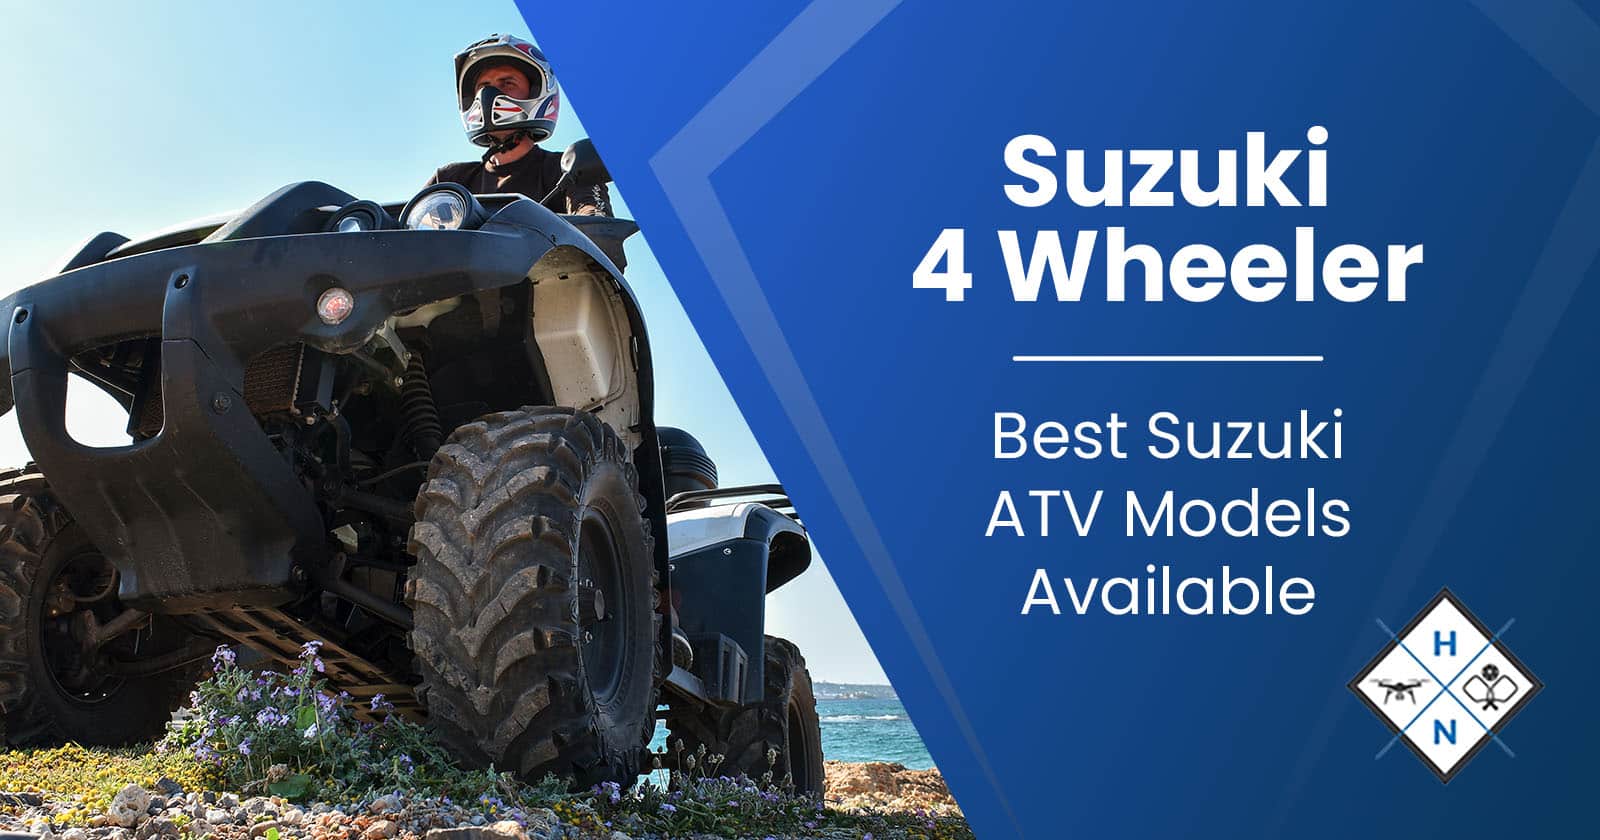 Suzuki 4 Wheeler – Best Suzuki ATV Models Available